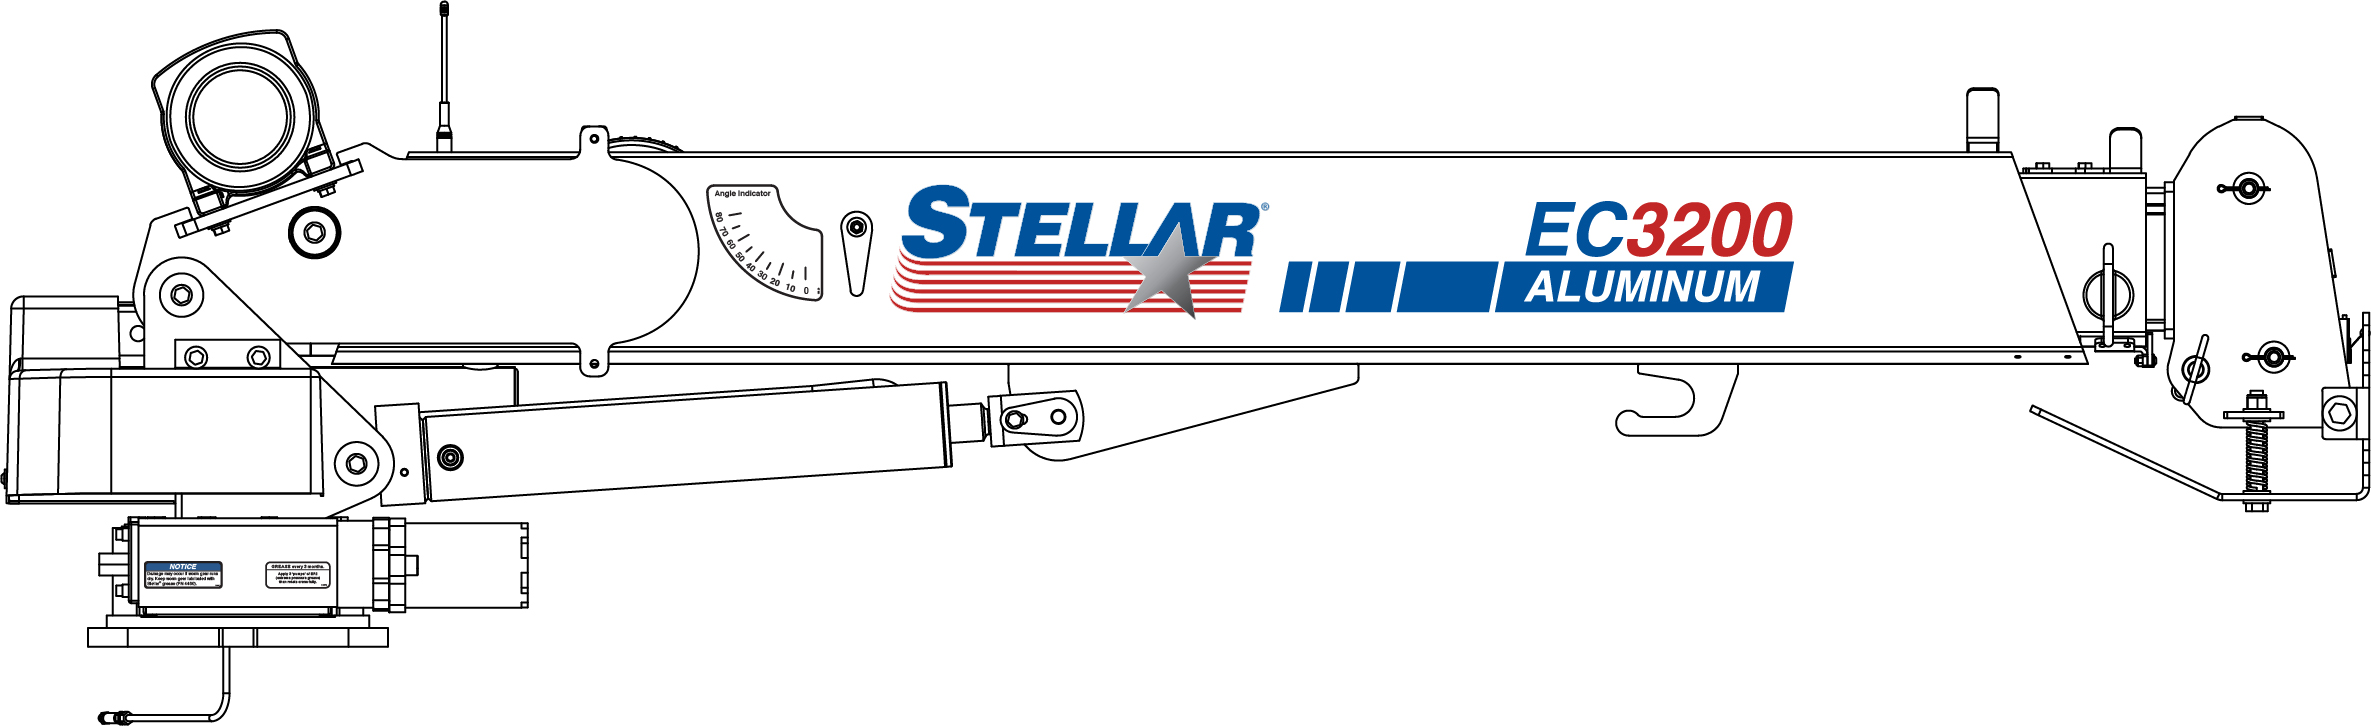 Stellar Industries EC3200 Aluminum Crane